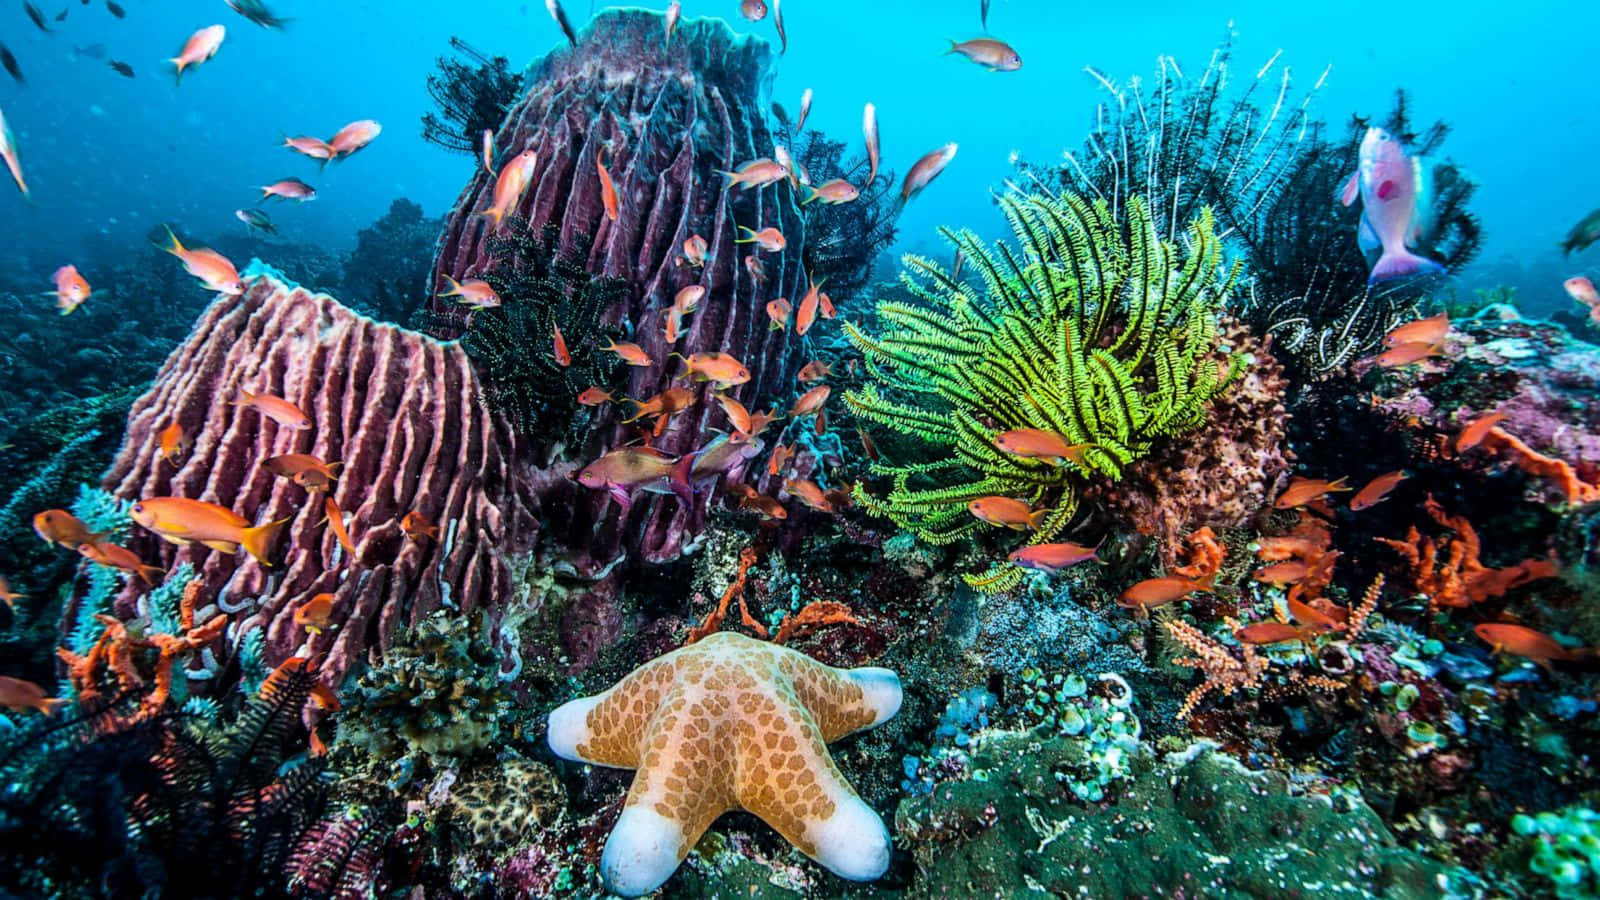 Imagende Vida Marina Bajo El Mar, Con Arrecife De Coral Y Estrella De Mar.